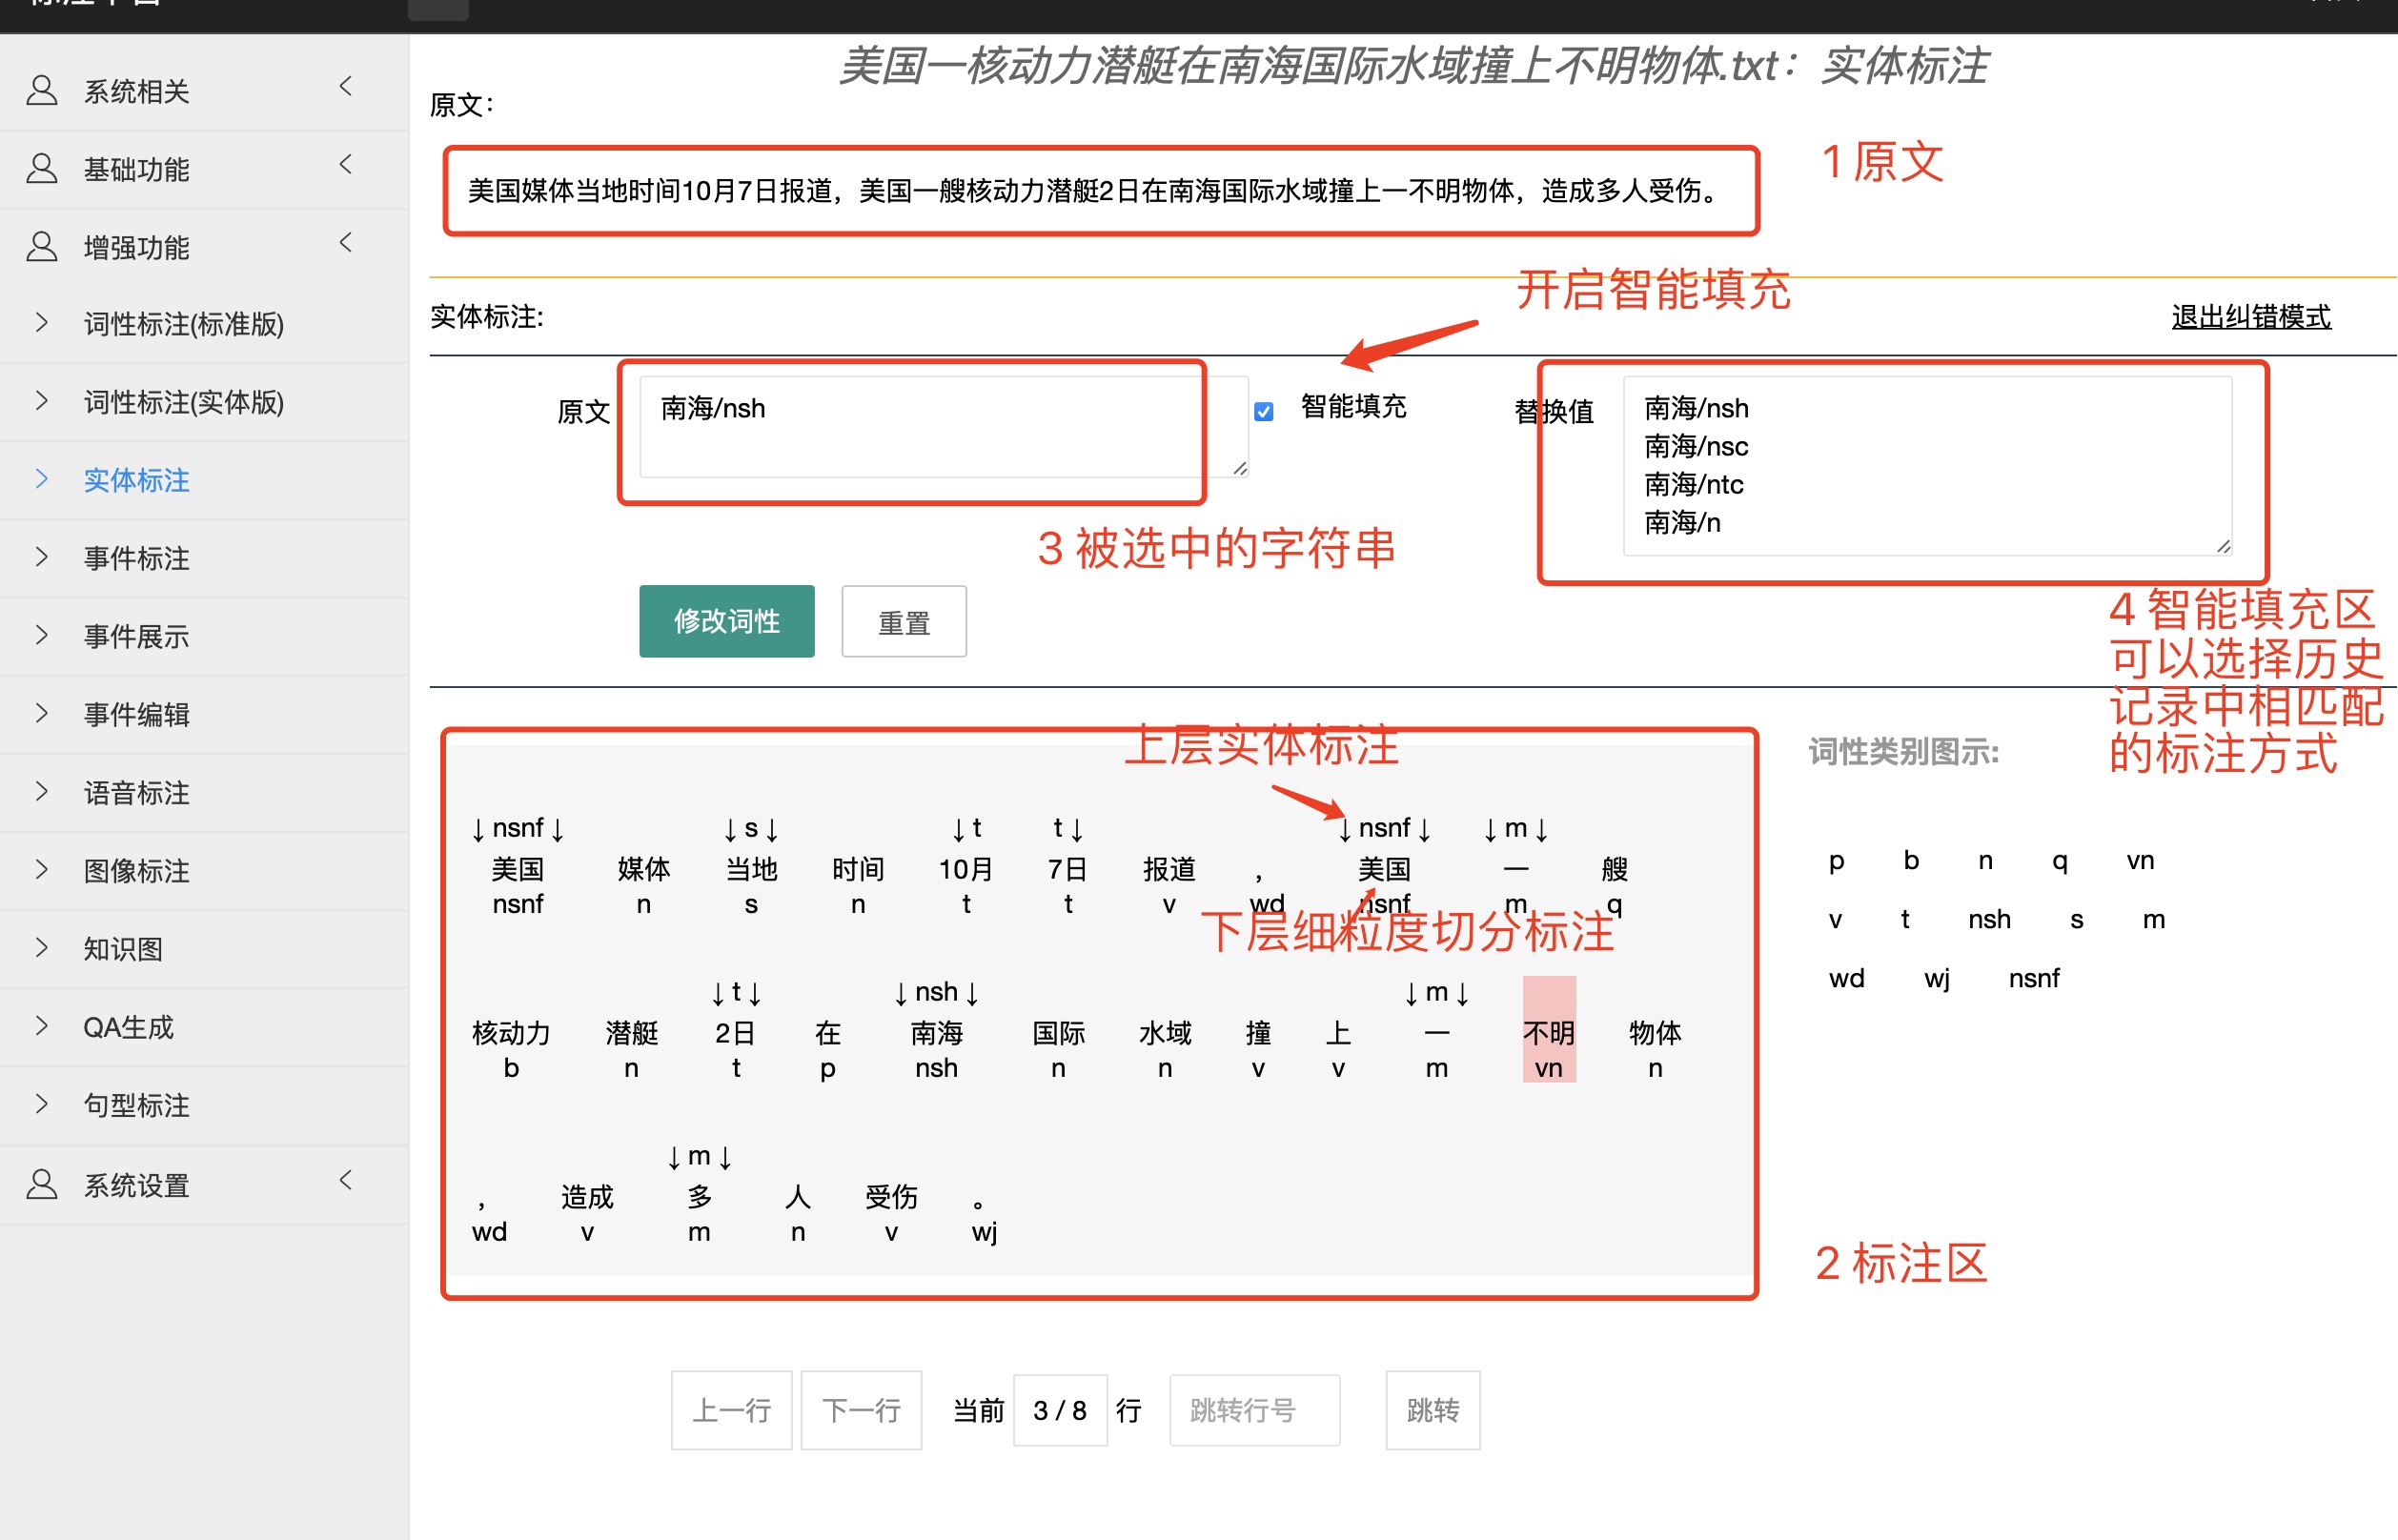 [NLP] 免费中文文本多任务自动辅助标注工具